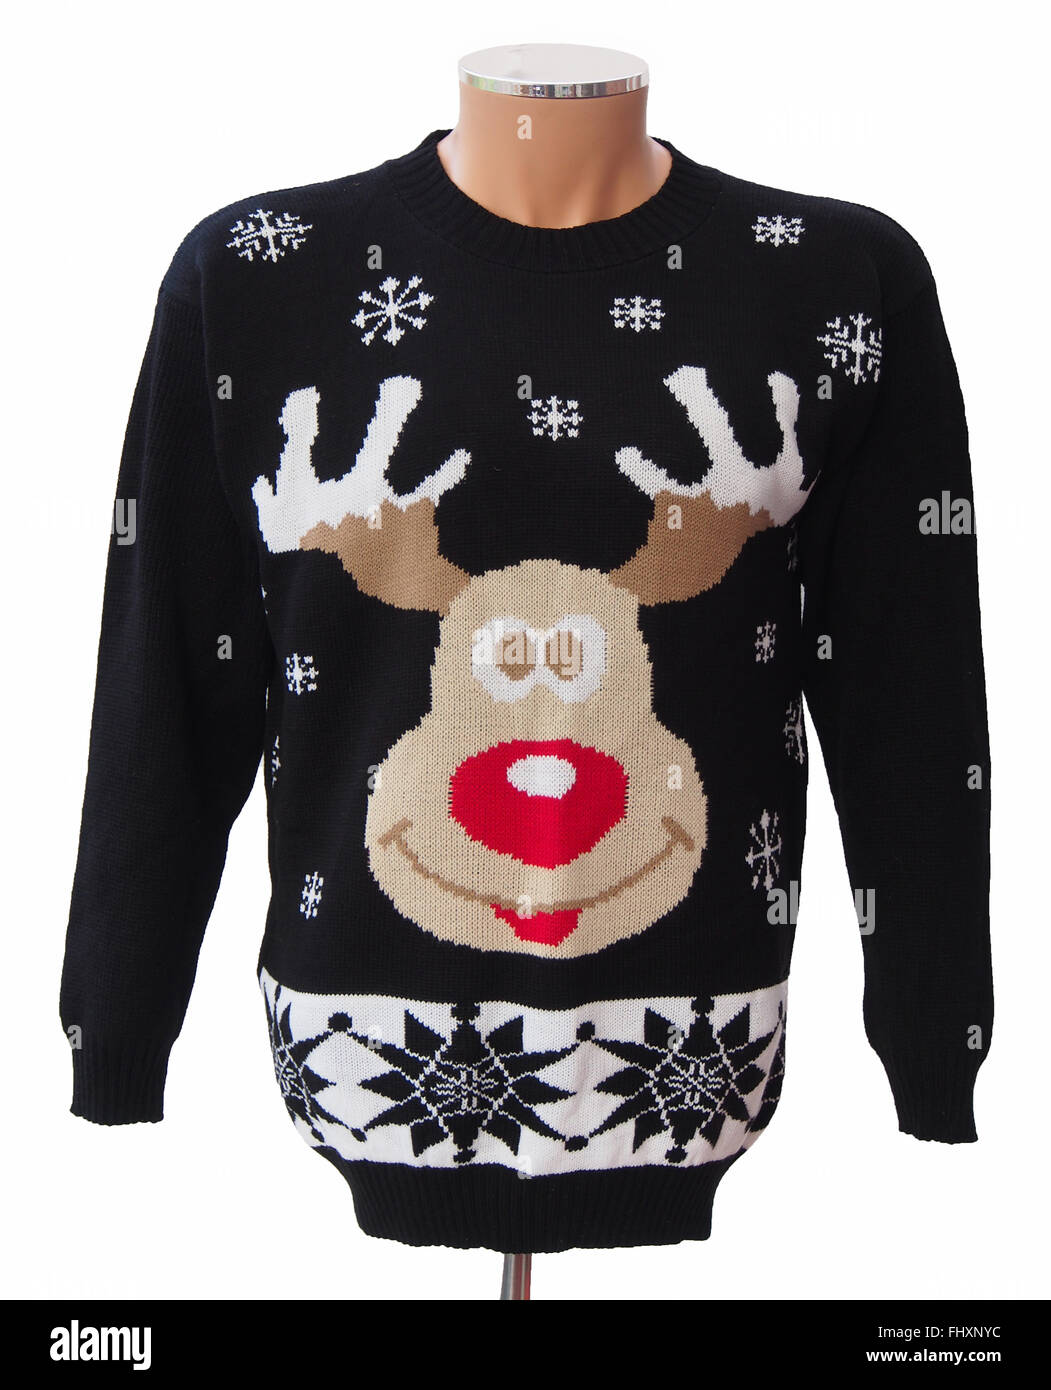 In maglia nera degli adulti del ponticello di Natale, dotate di Rudolph il naso rosso le renne e fiocchi di neve, isolata su uno sfondo bianco. Foto Stock